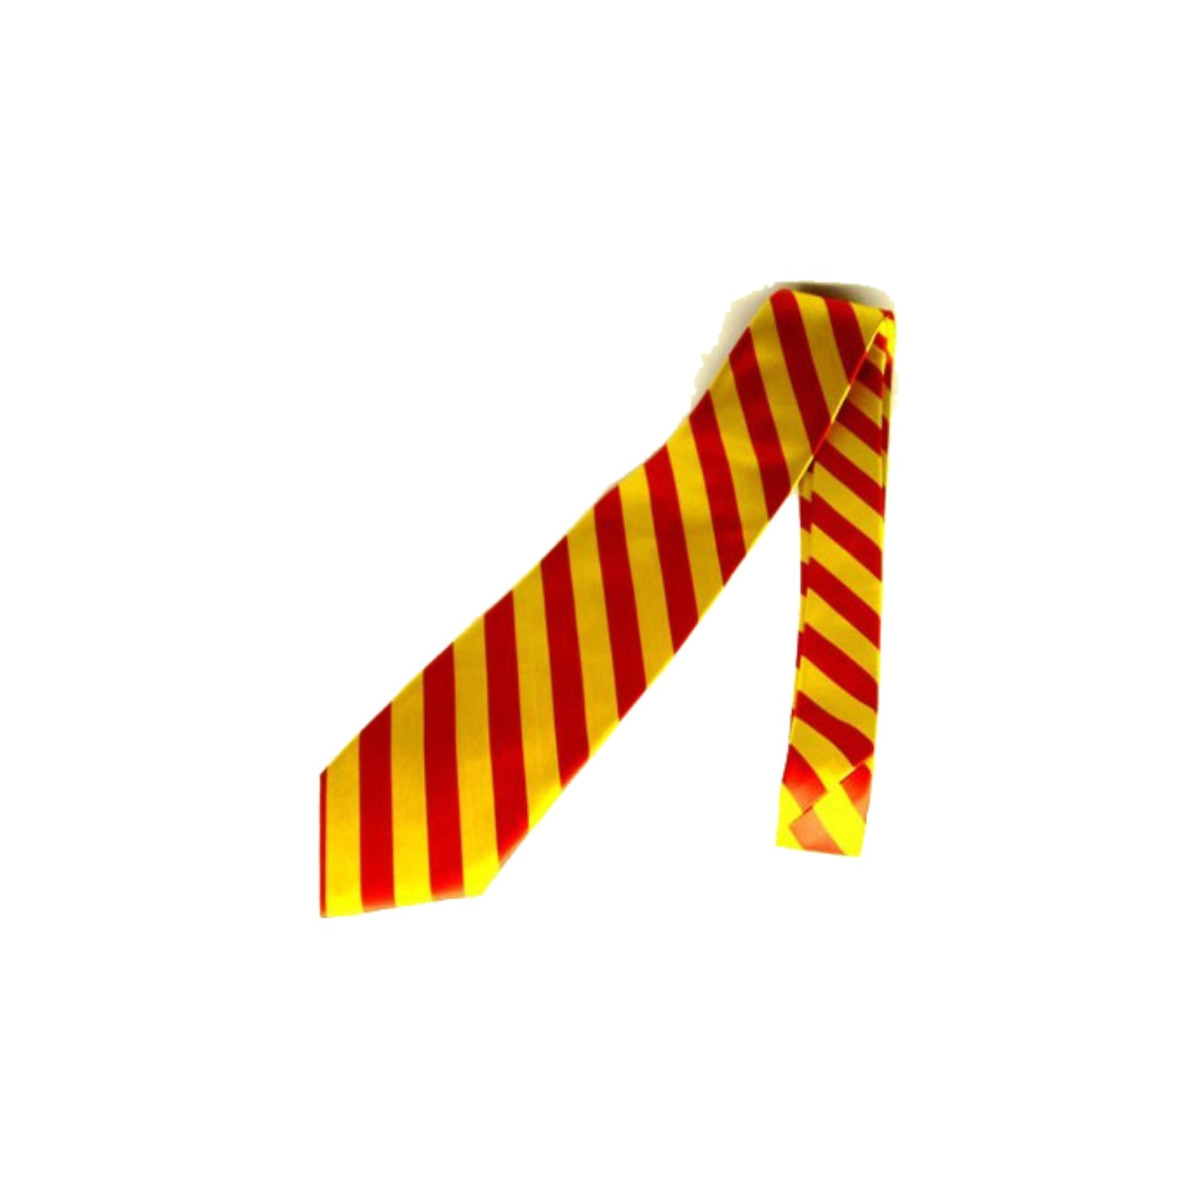 Krawatte "Baden" gelb-rot-gelb (Design 2)